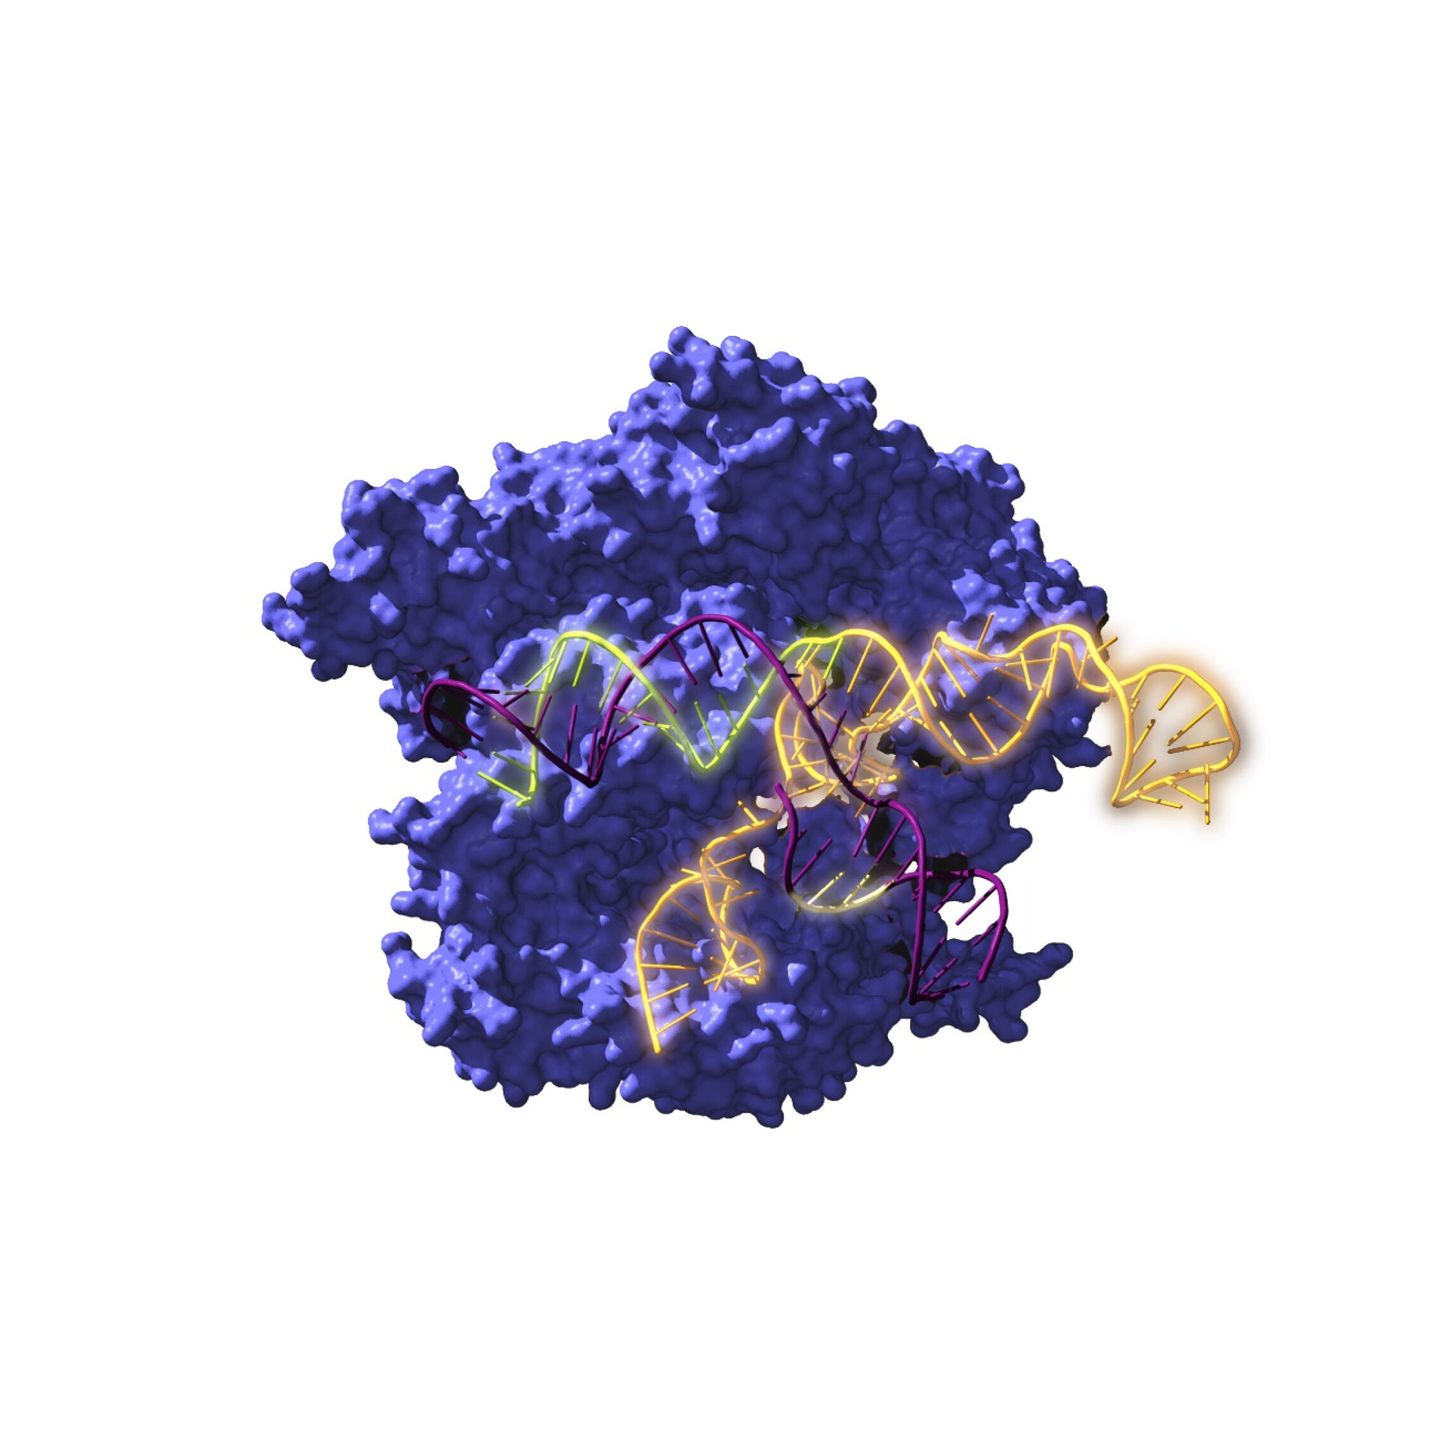 El sistema CRISPR permite lograr nuevas variedades sin introducir genes ajenos al organismo. (EFE)